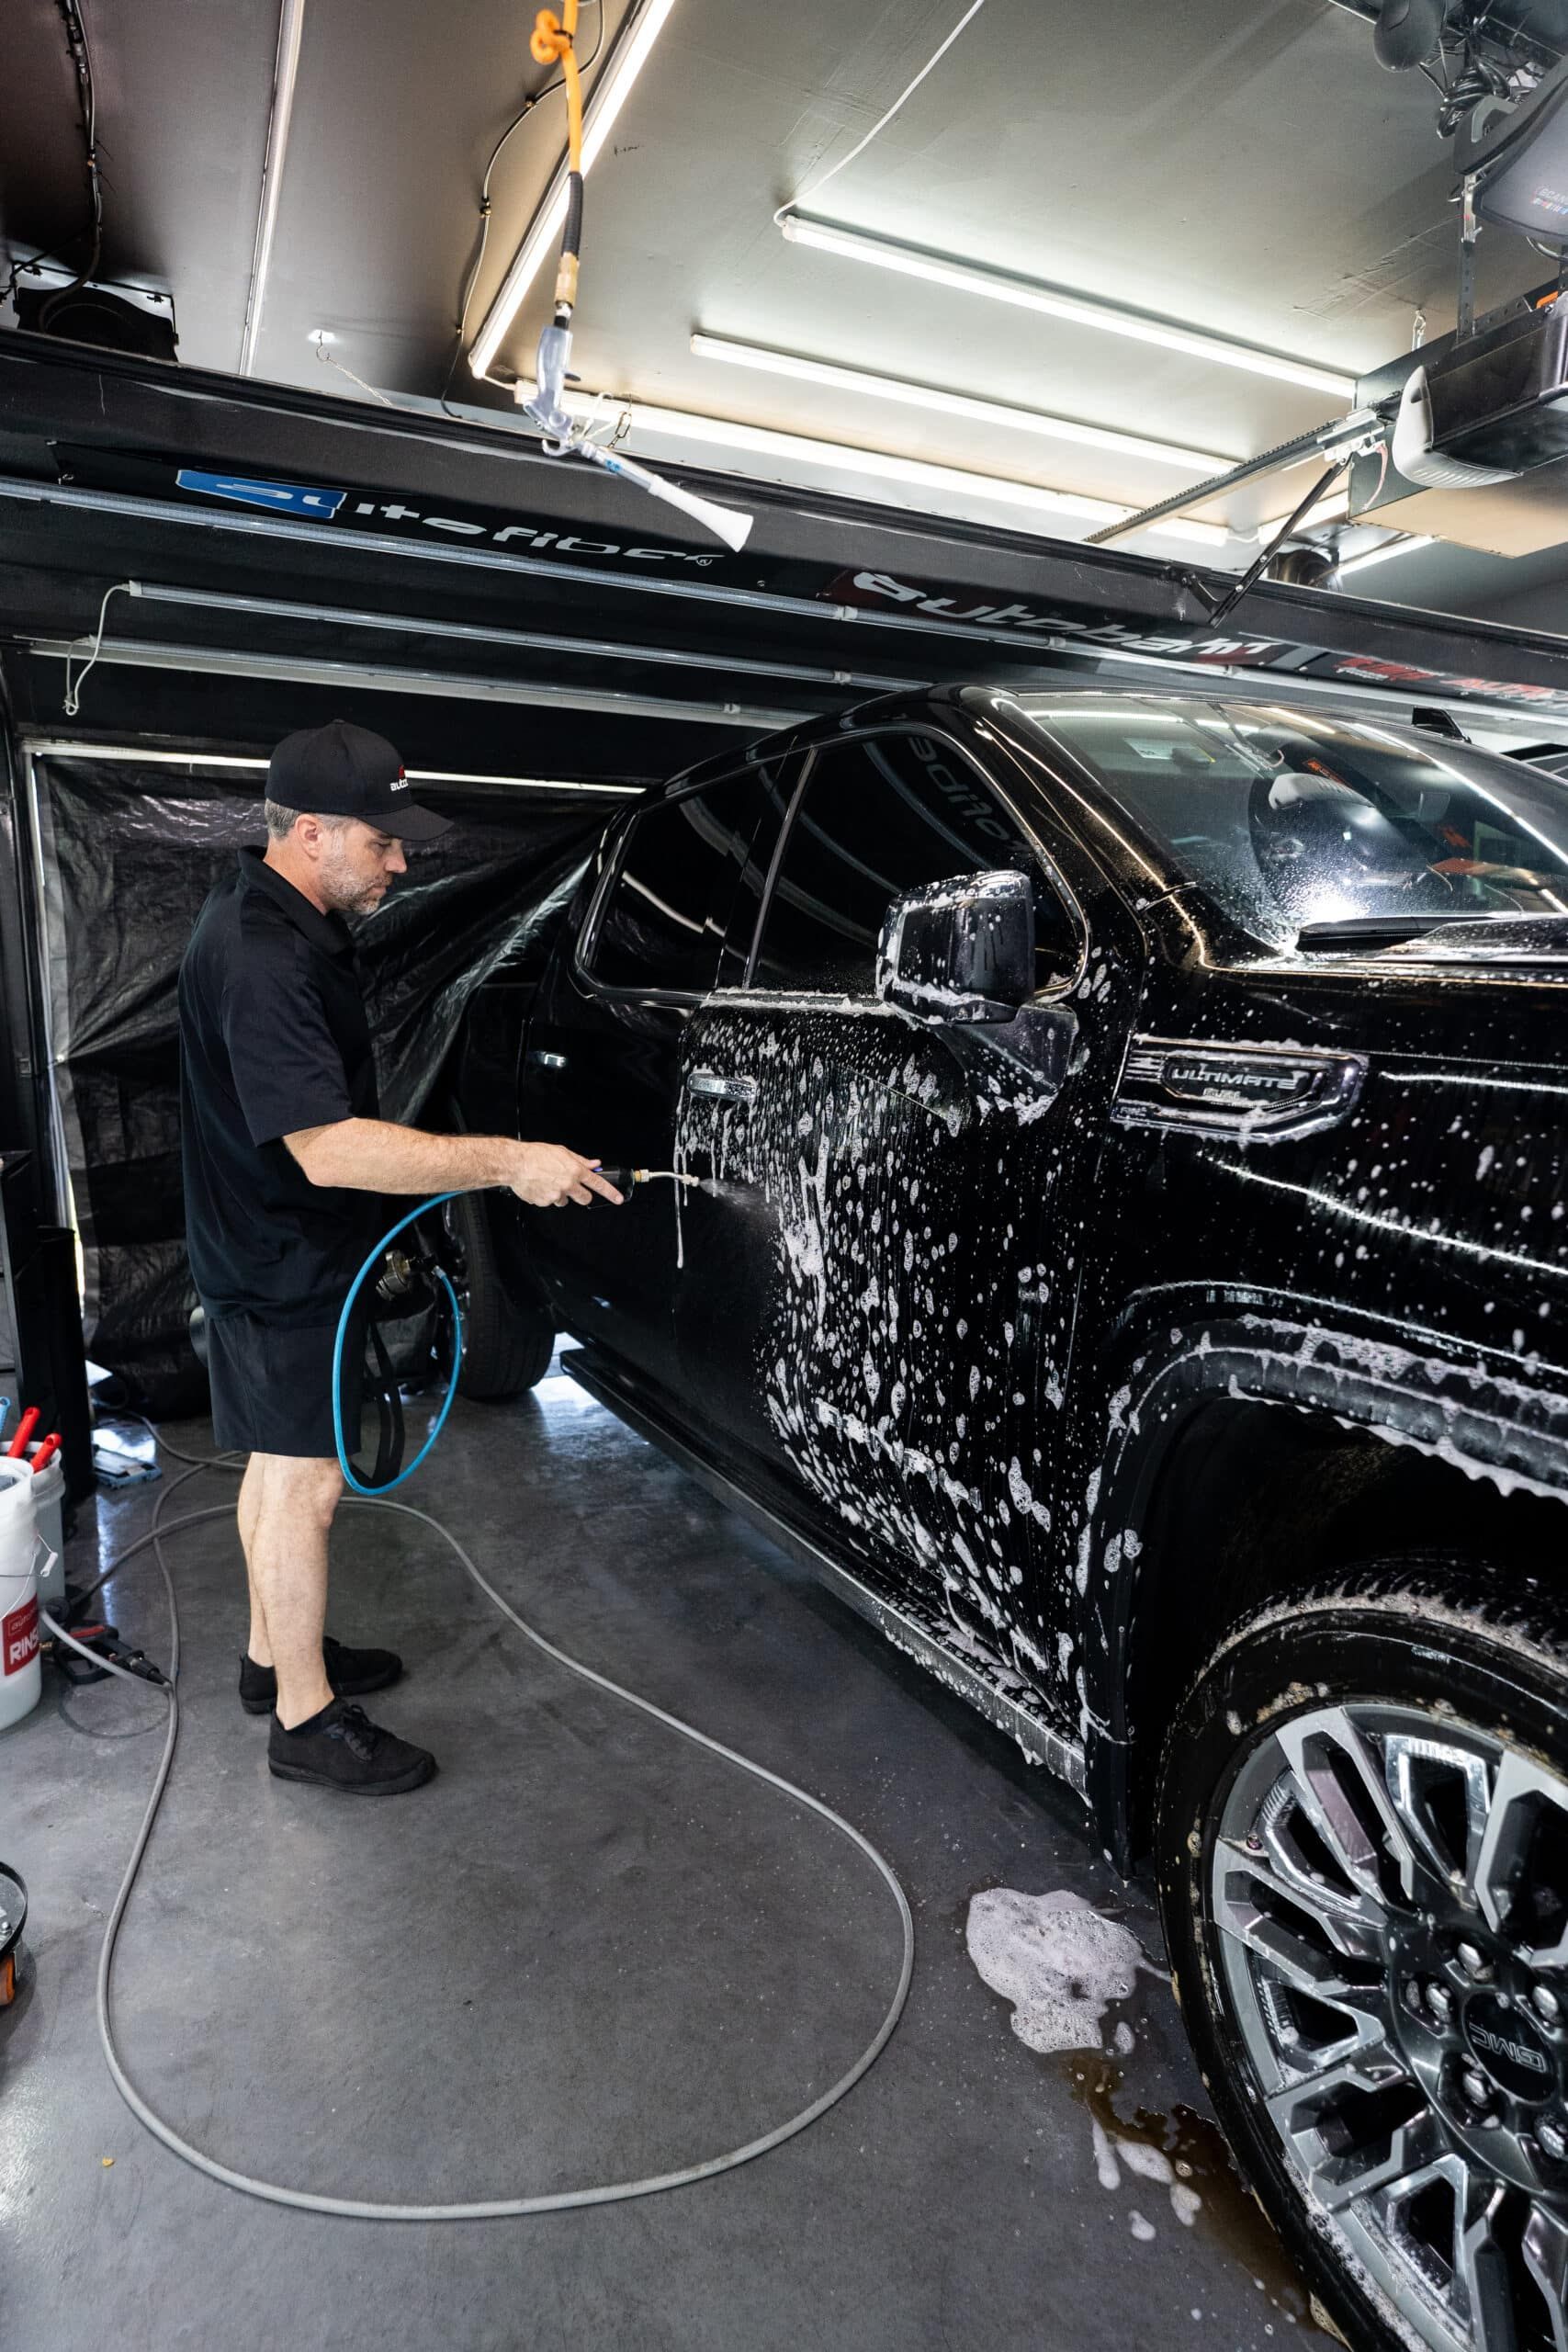 A man is washing a black car in a garage.